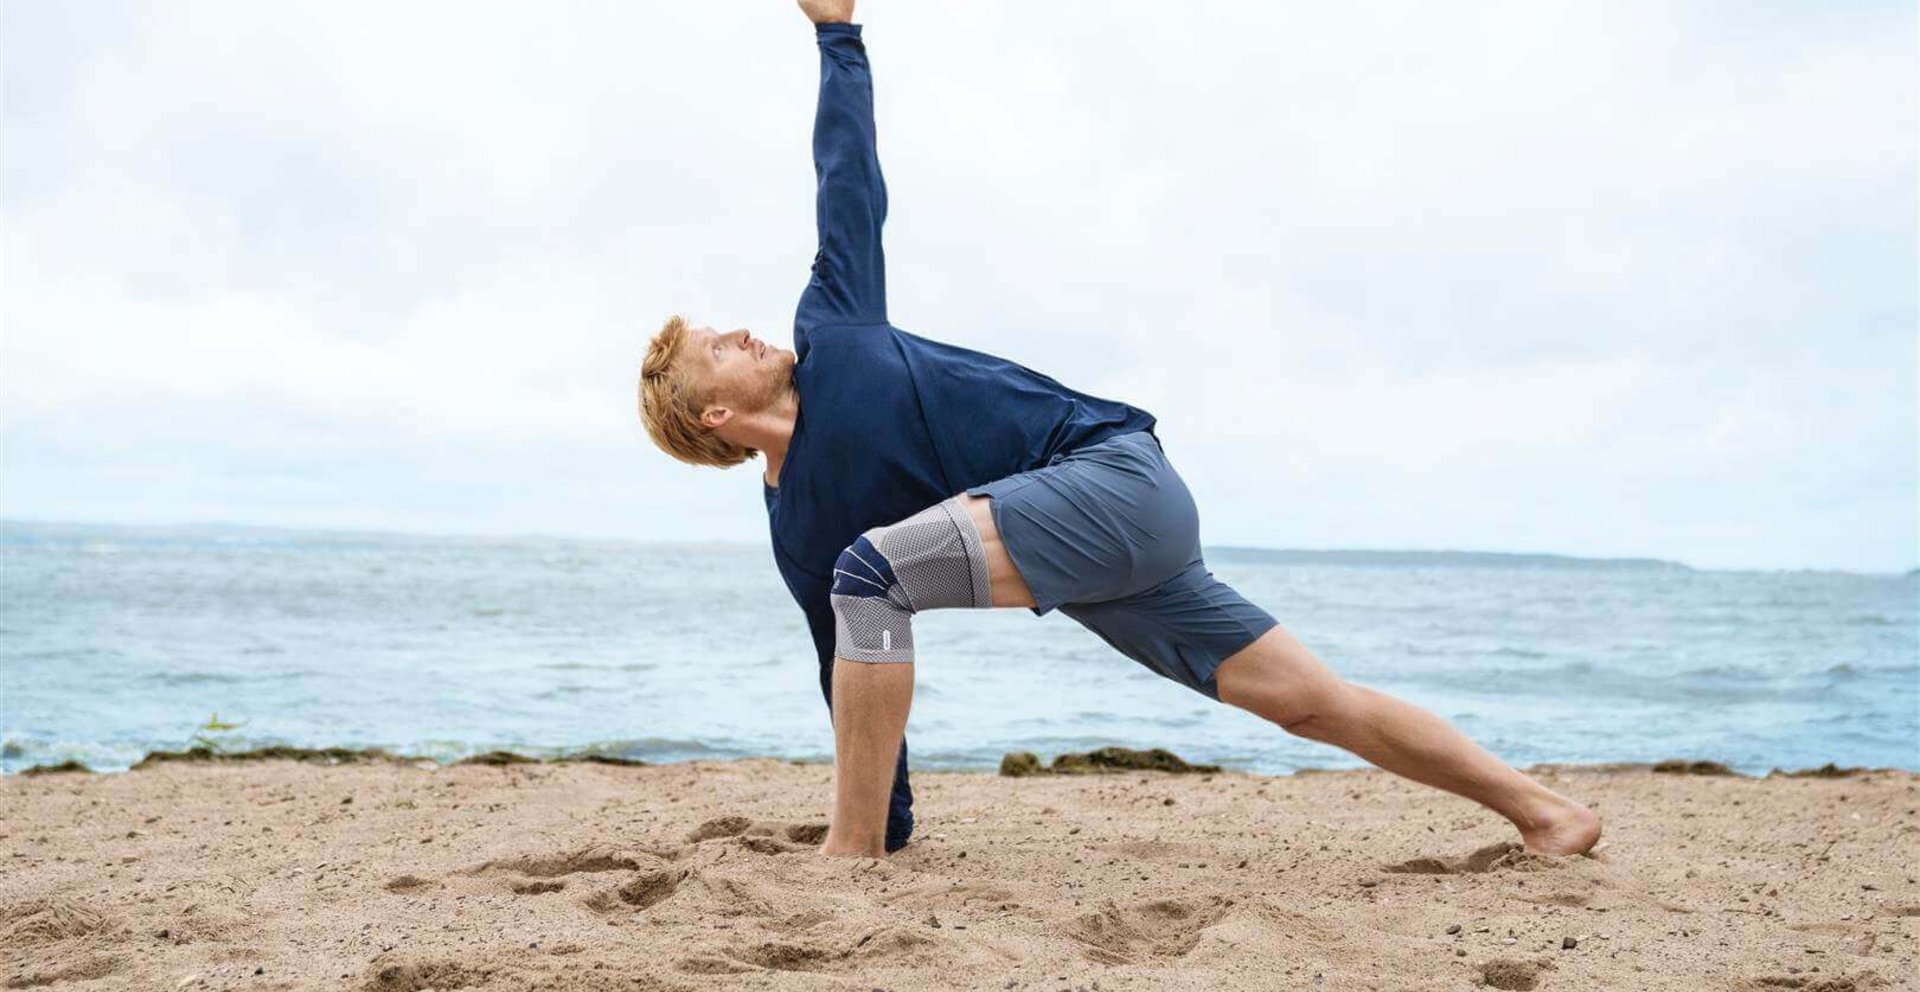 Das Bild zeigt einen Mann in Yoga-Pose am Strand. Am rechten Knie trägt er eine GenuTrain Bandage zur Unterstützung. Regelmäßige Knieübungen können Schmerzen lindern.